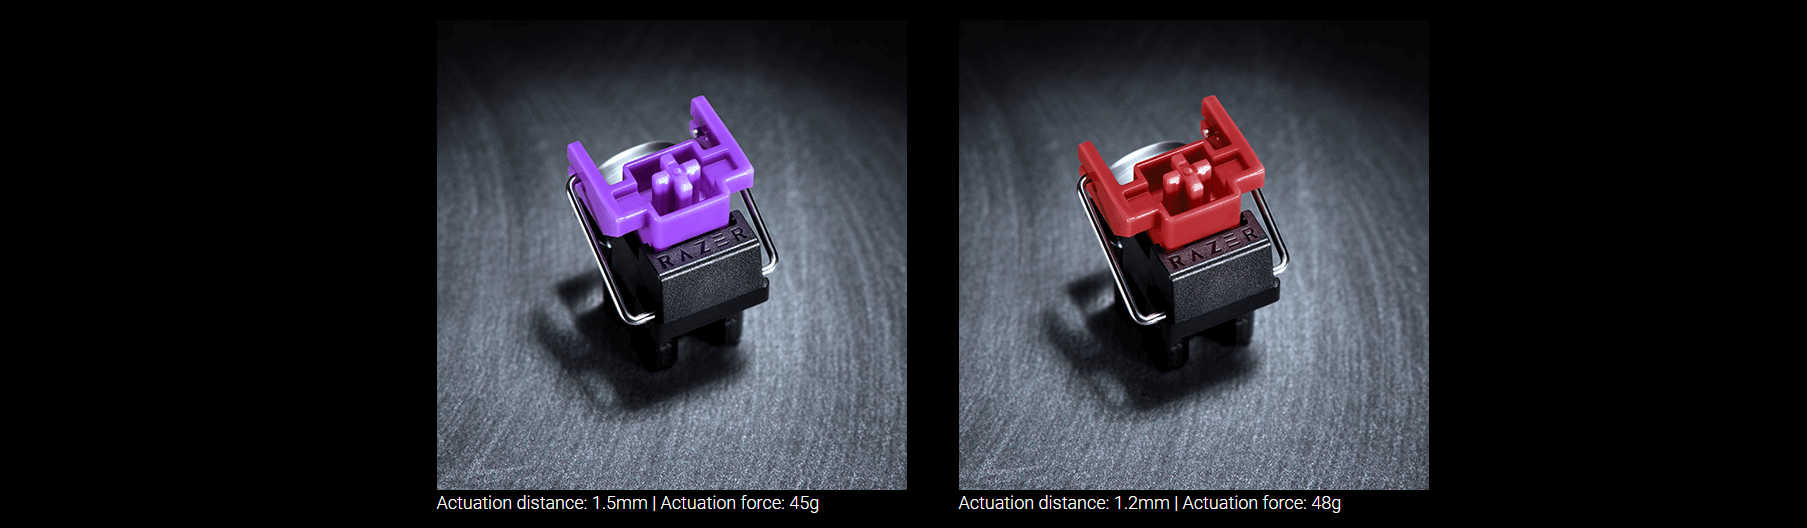 Bàn phím cơ Razer Huntsman Mini Mercury ( Clicky Purple optical switch) (RZ03-03390300-R3M1) sử dụng switch quang học độc quyền của Razer cho hành trình nhanh, nhận tín hiệu tốt